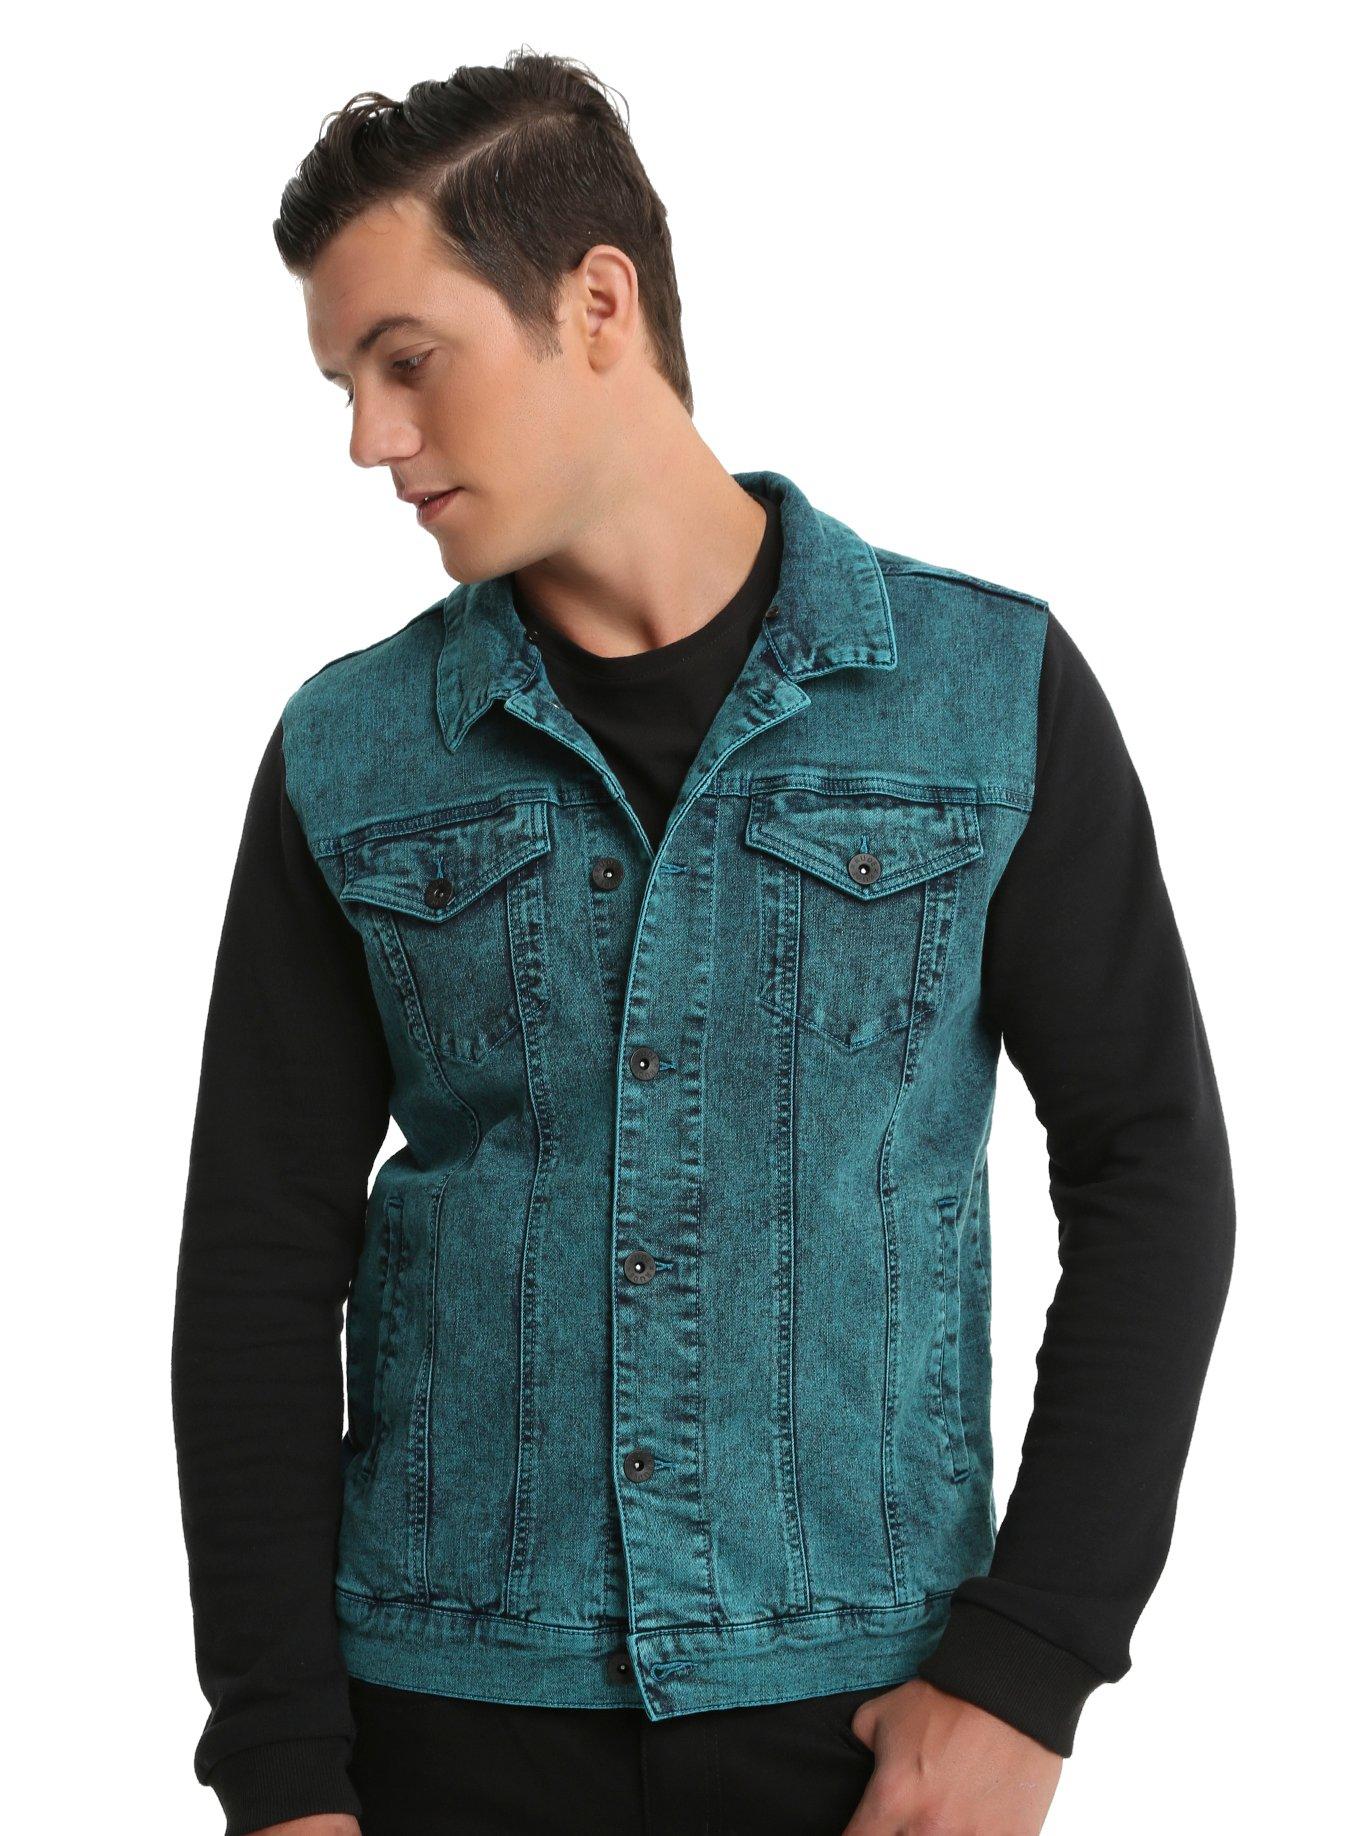 XXX RUDE Turquoise Acid Wash Denim Black Fleece Hooded Jacket | Hot Topic